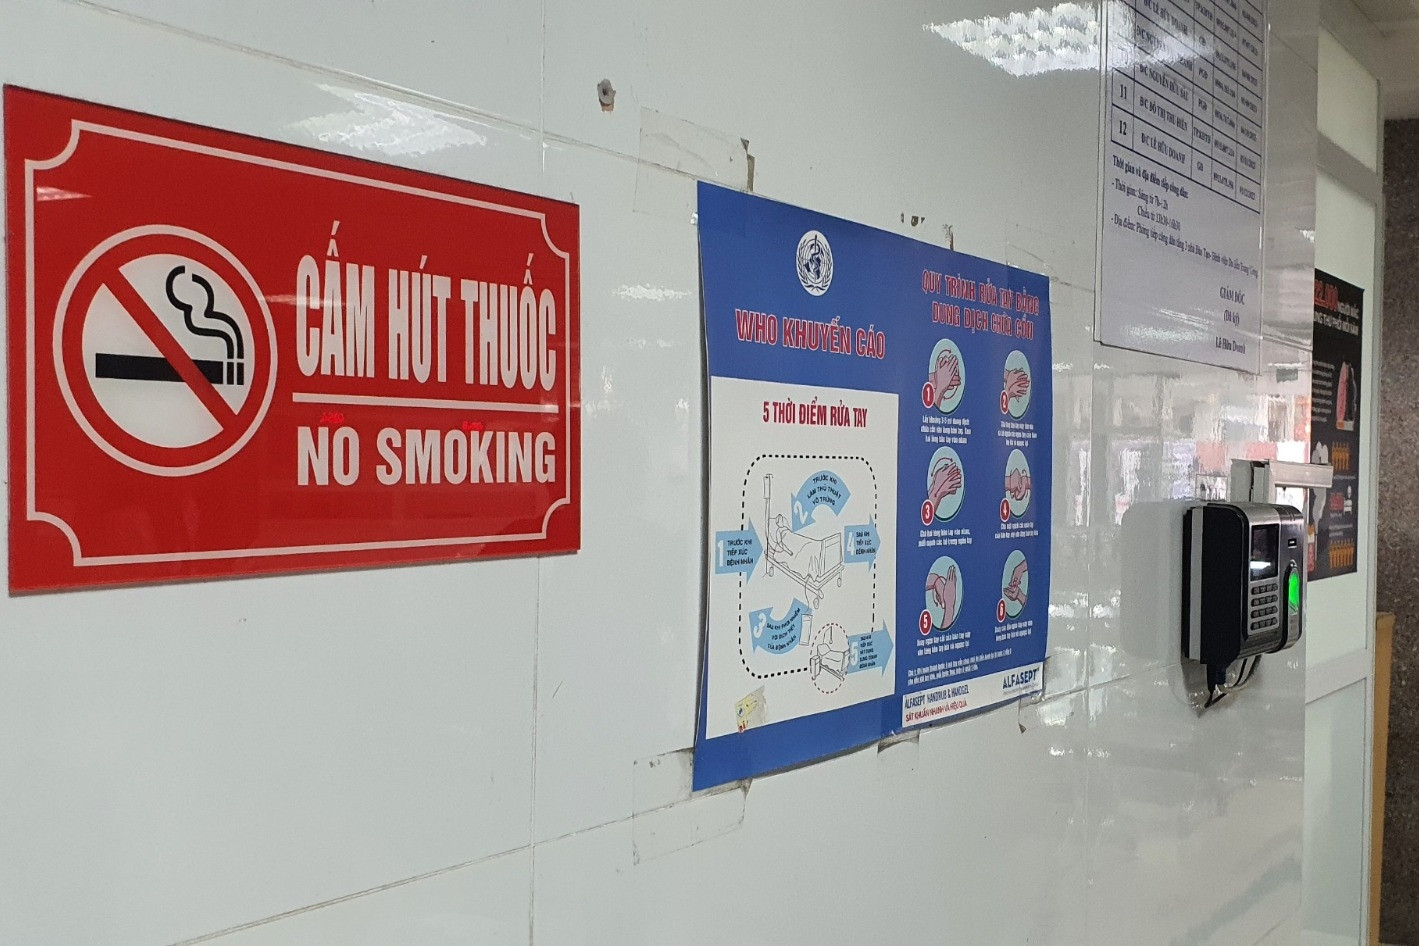 Hút thuốc lá tại địa điểm có quy định cấm thì bị phạt bao nhiêu?